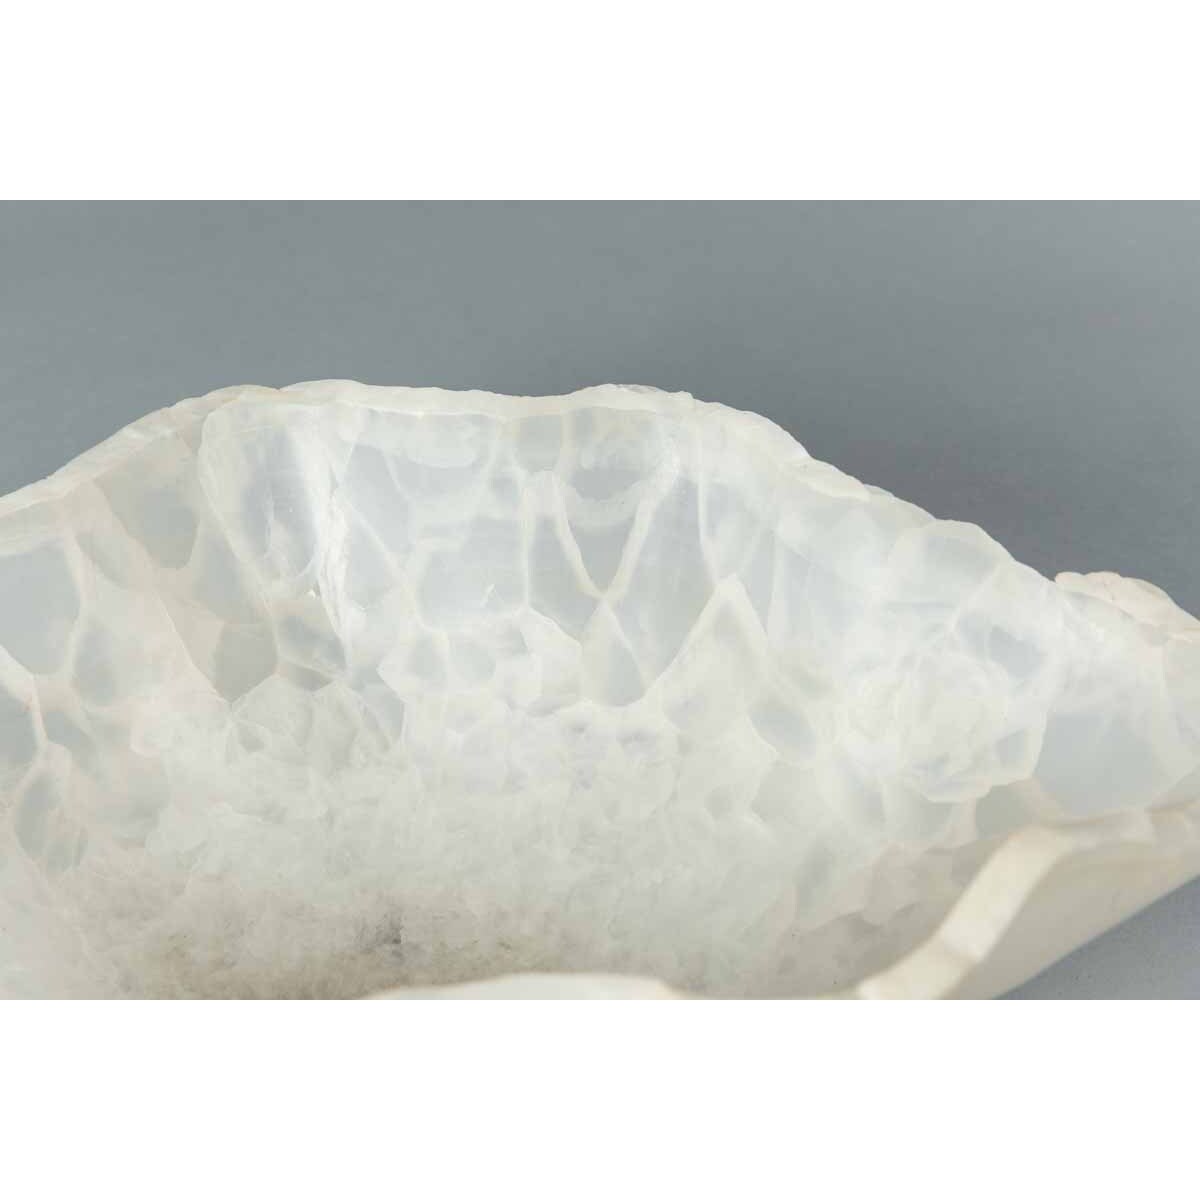 White Ice Onyx Bowl in Irregular Shape